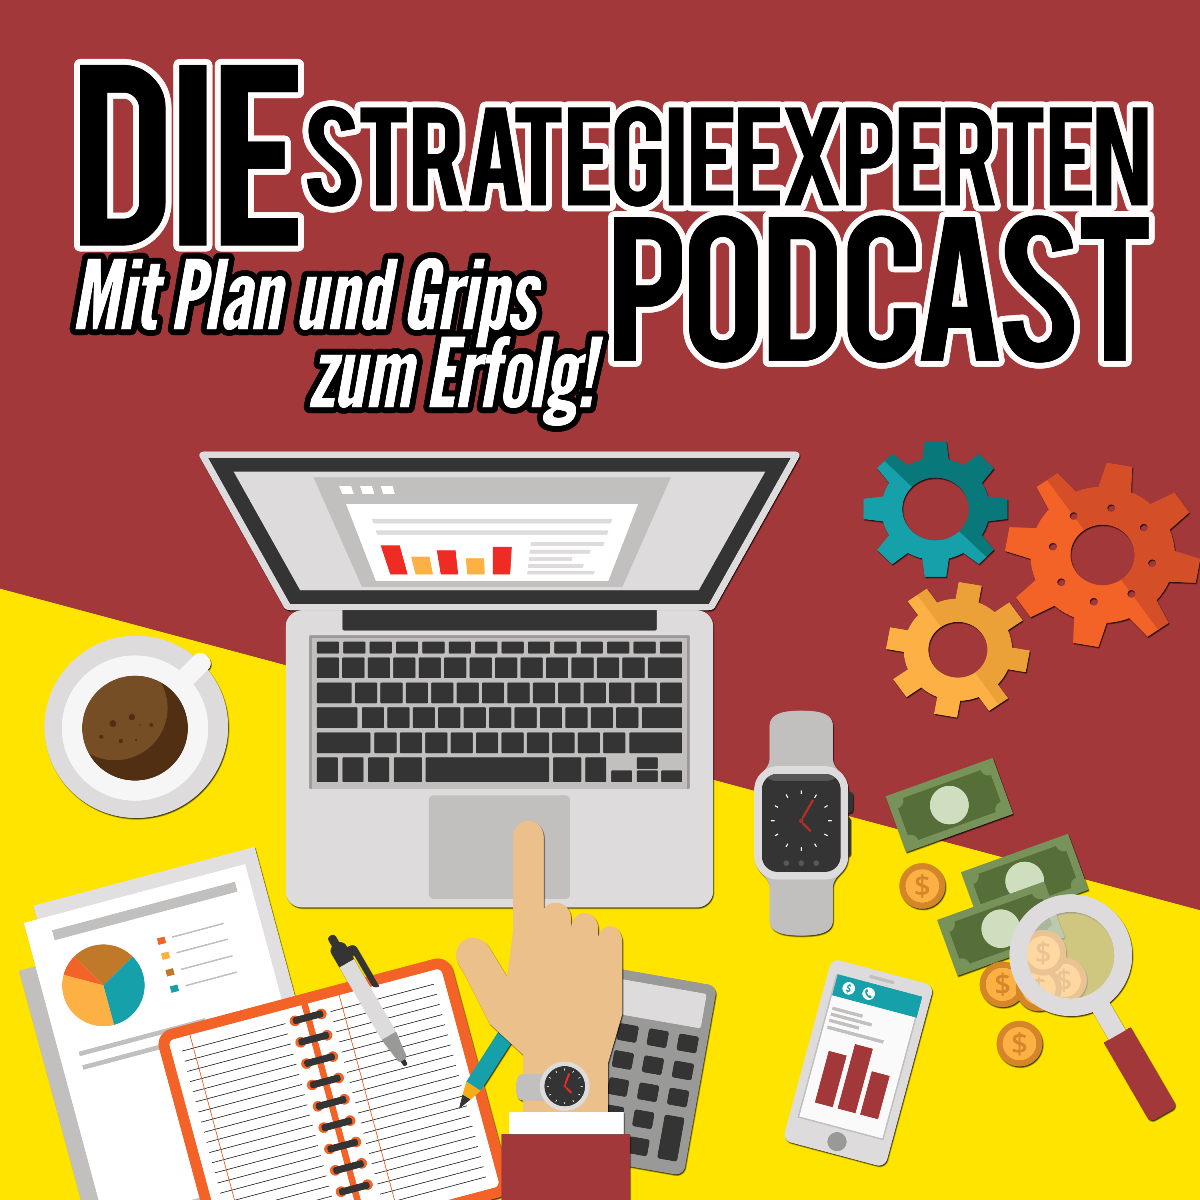 Strategieexperten-Podcast: Mit Plan und Grips zum Erfolg